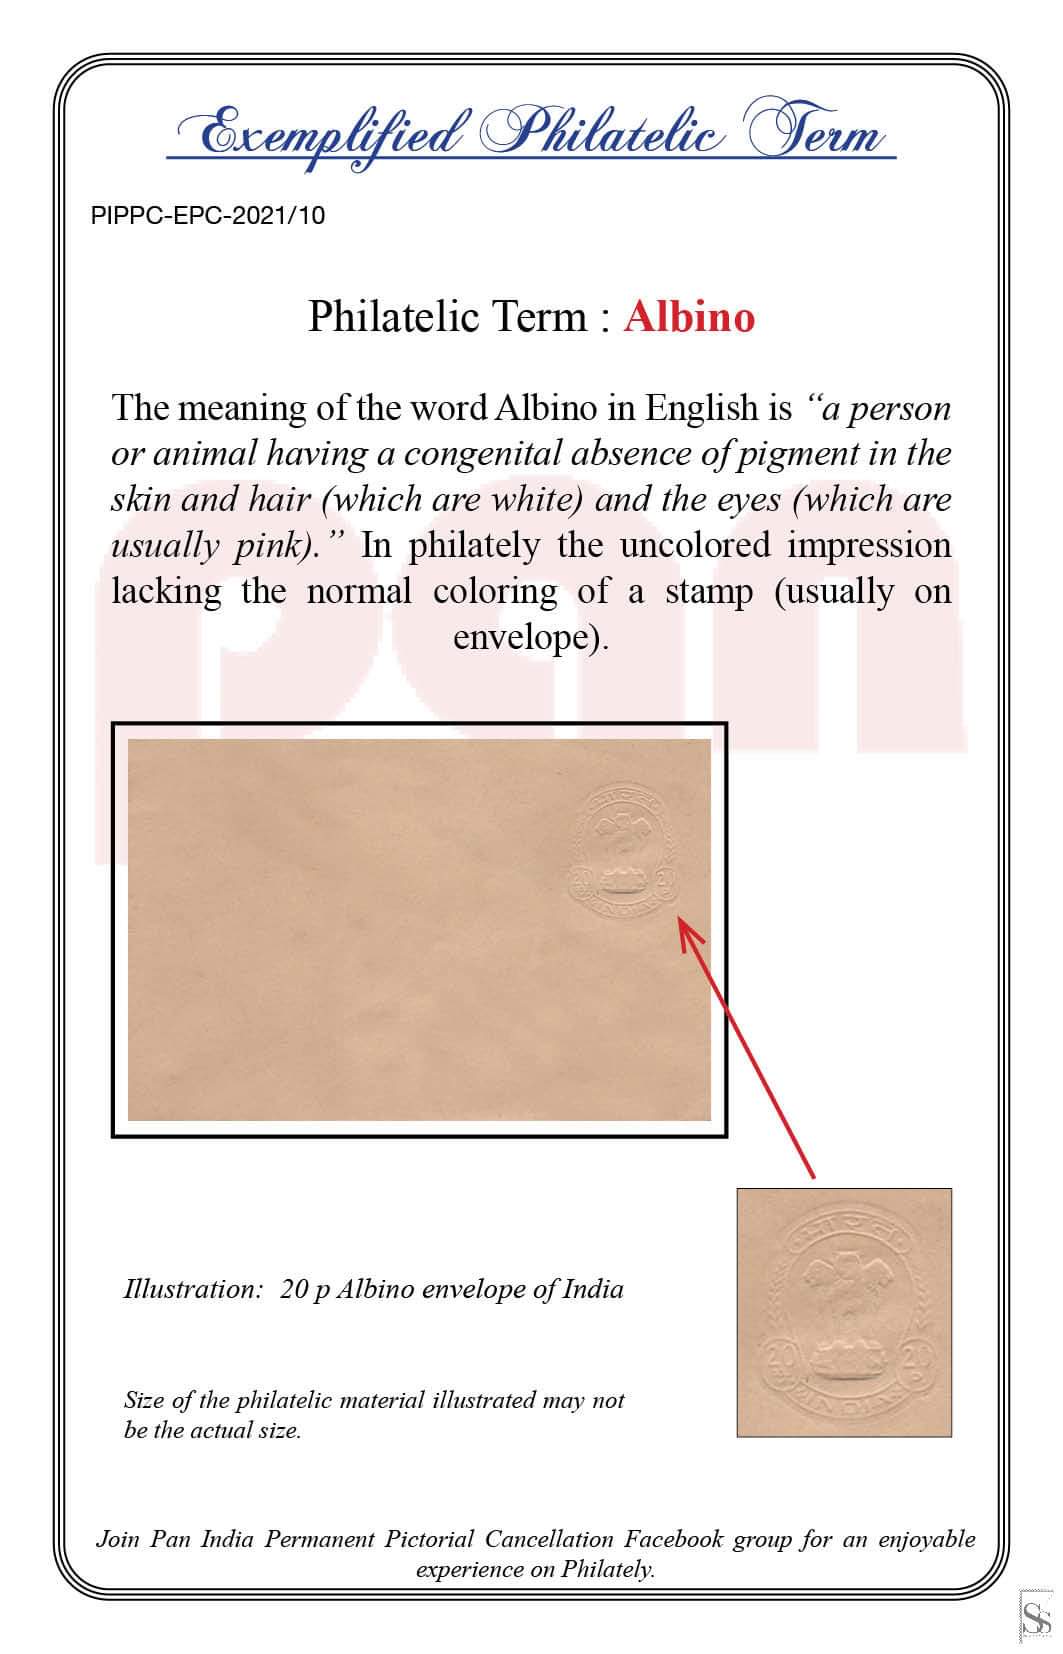 10. Today's exemplified philatelic term-Albino